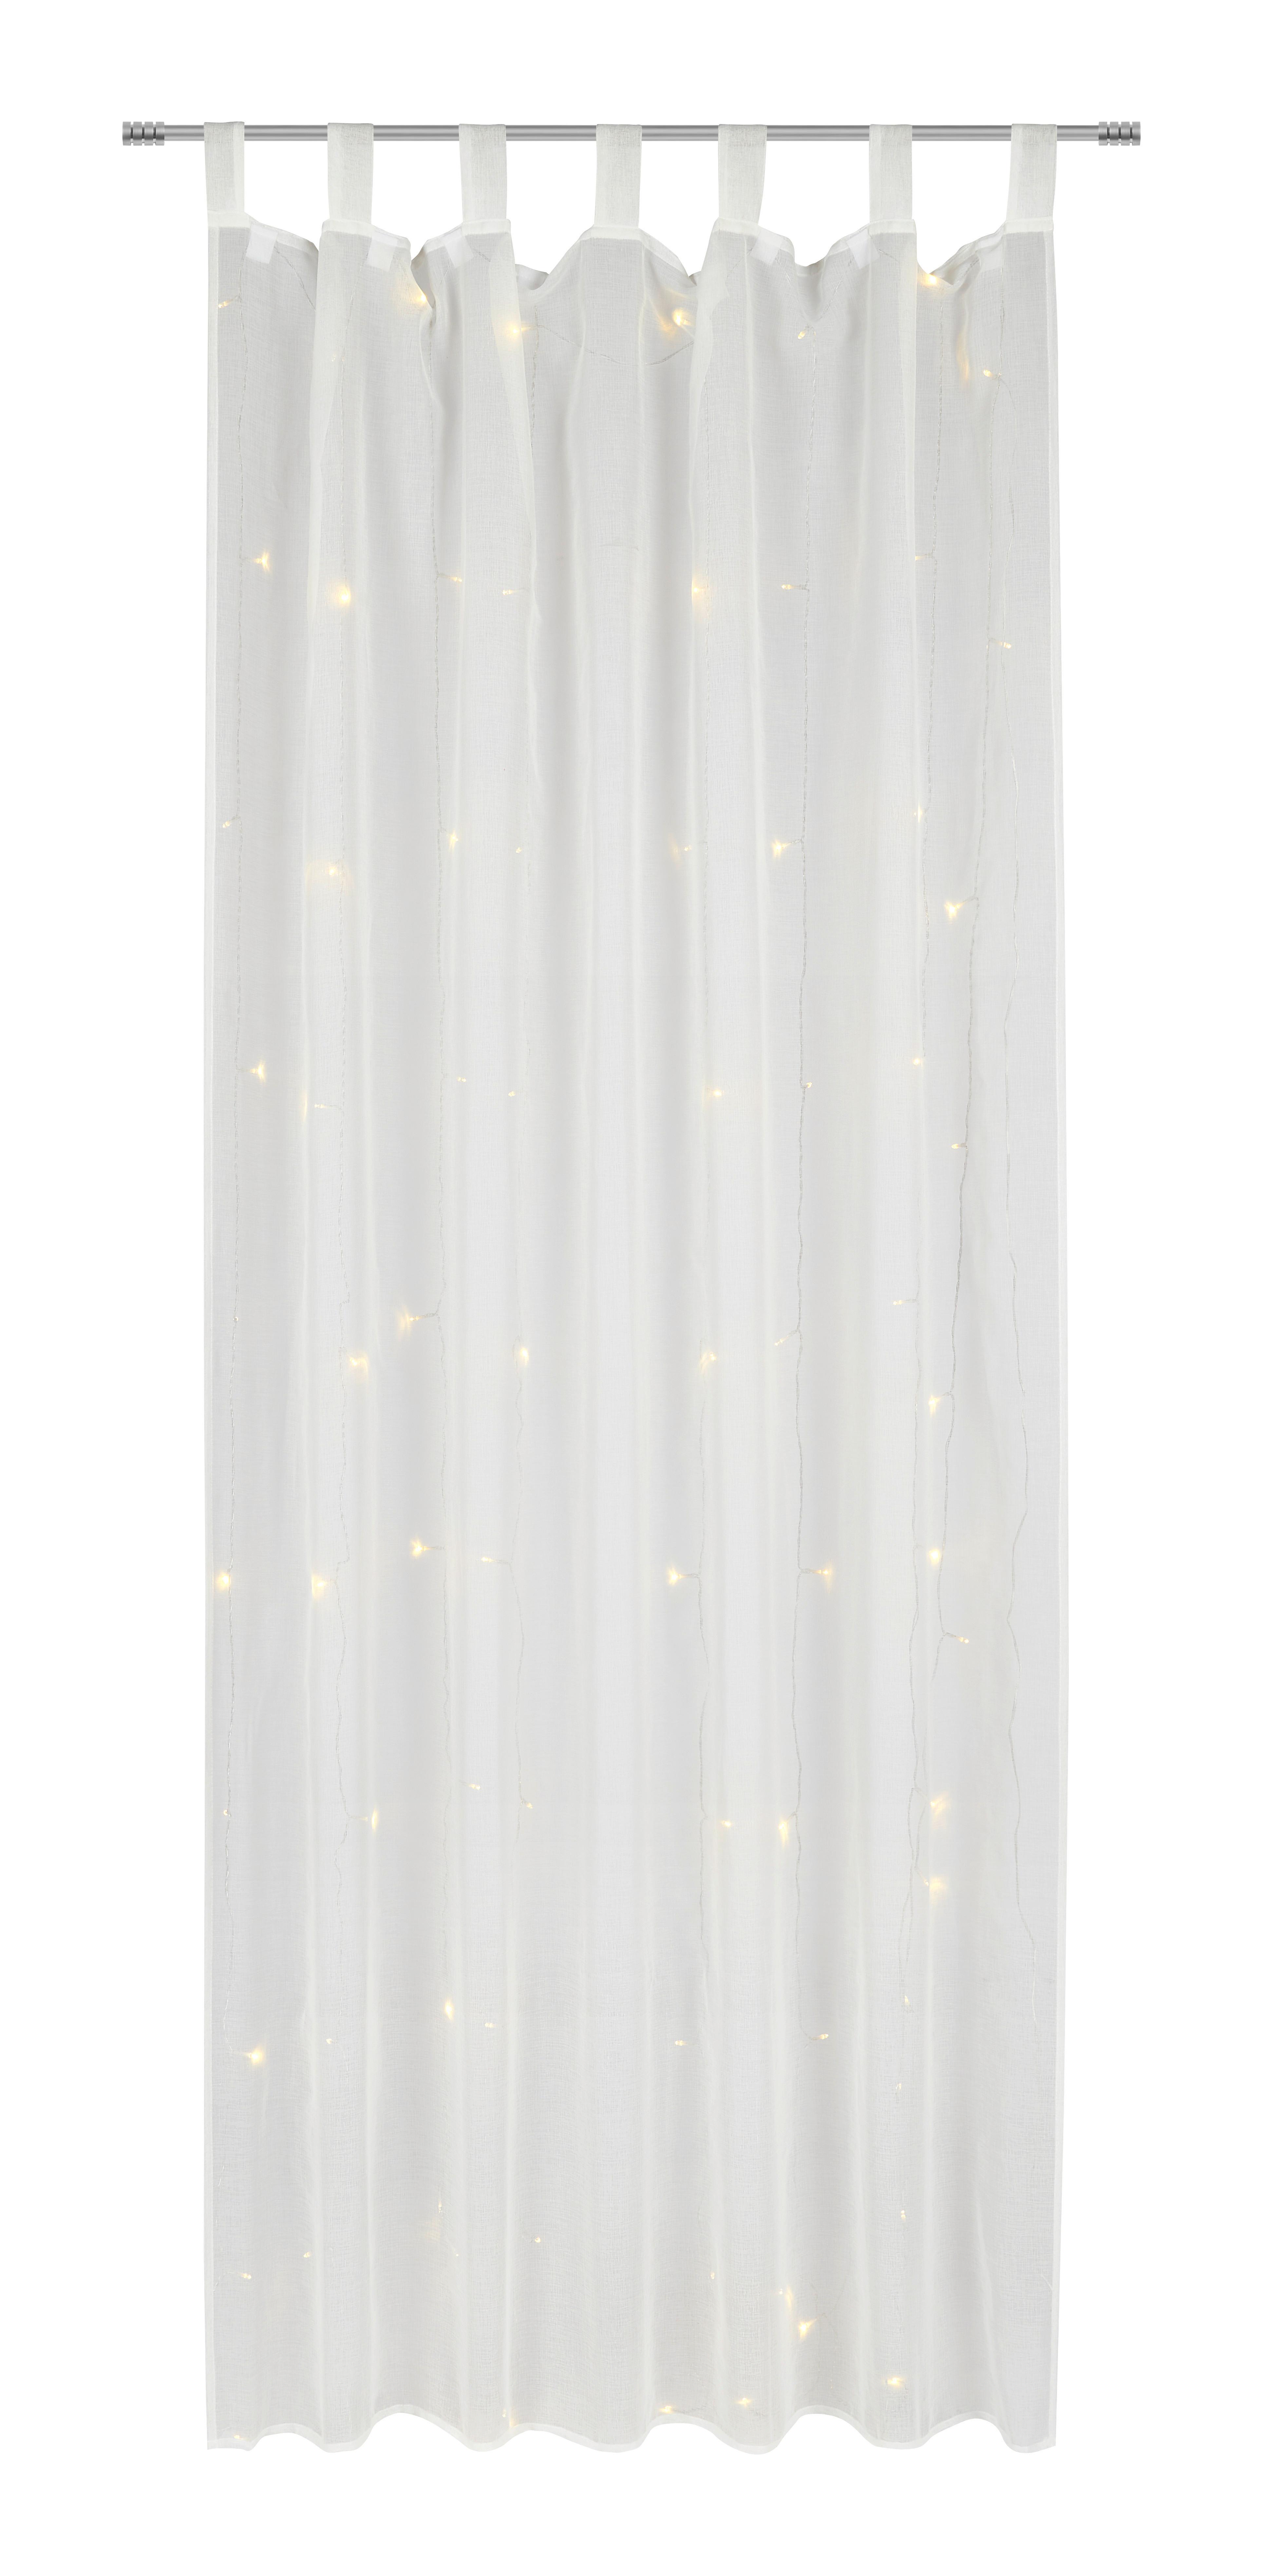 Závěs S Poutky Lights, 140/245cm, Bílá - bílá, Romantický / Rustikální, textil (140/245cm) - Modern Living